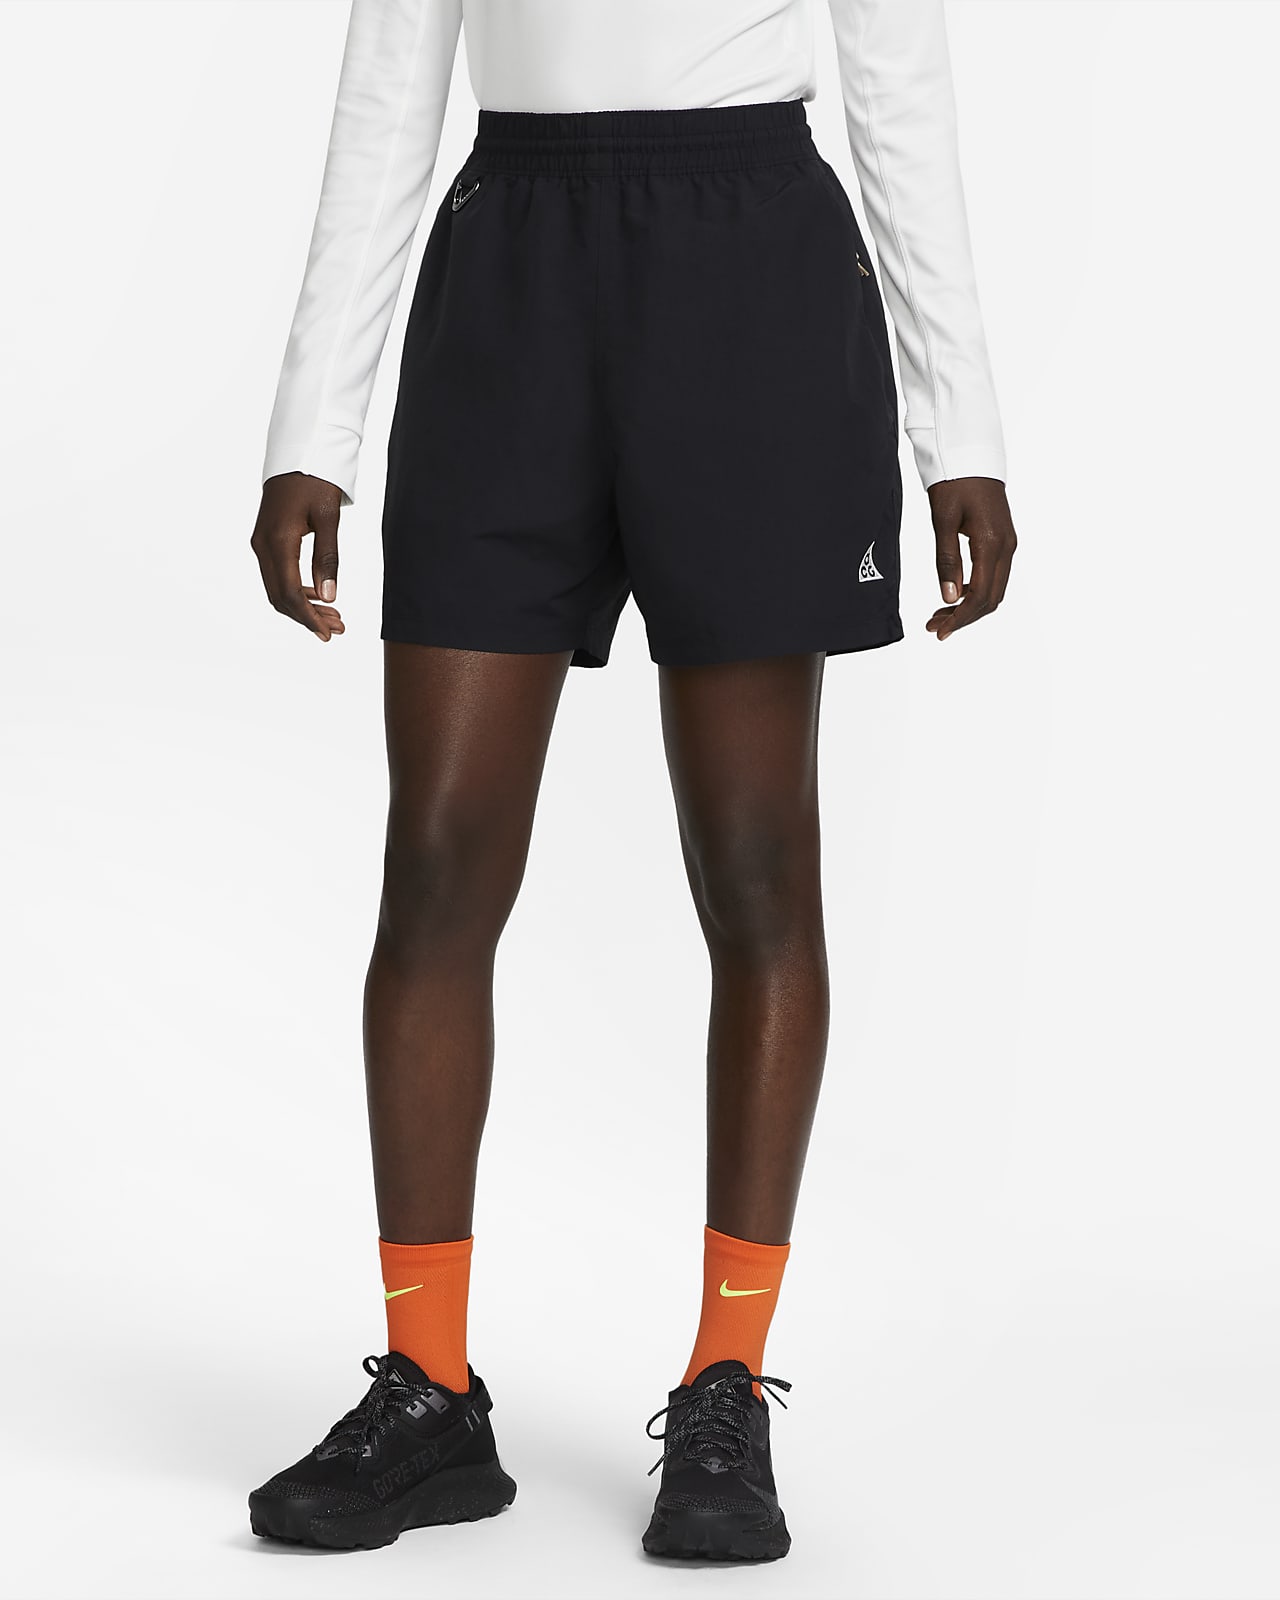 Short 13 cm Nike ACG pour femme